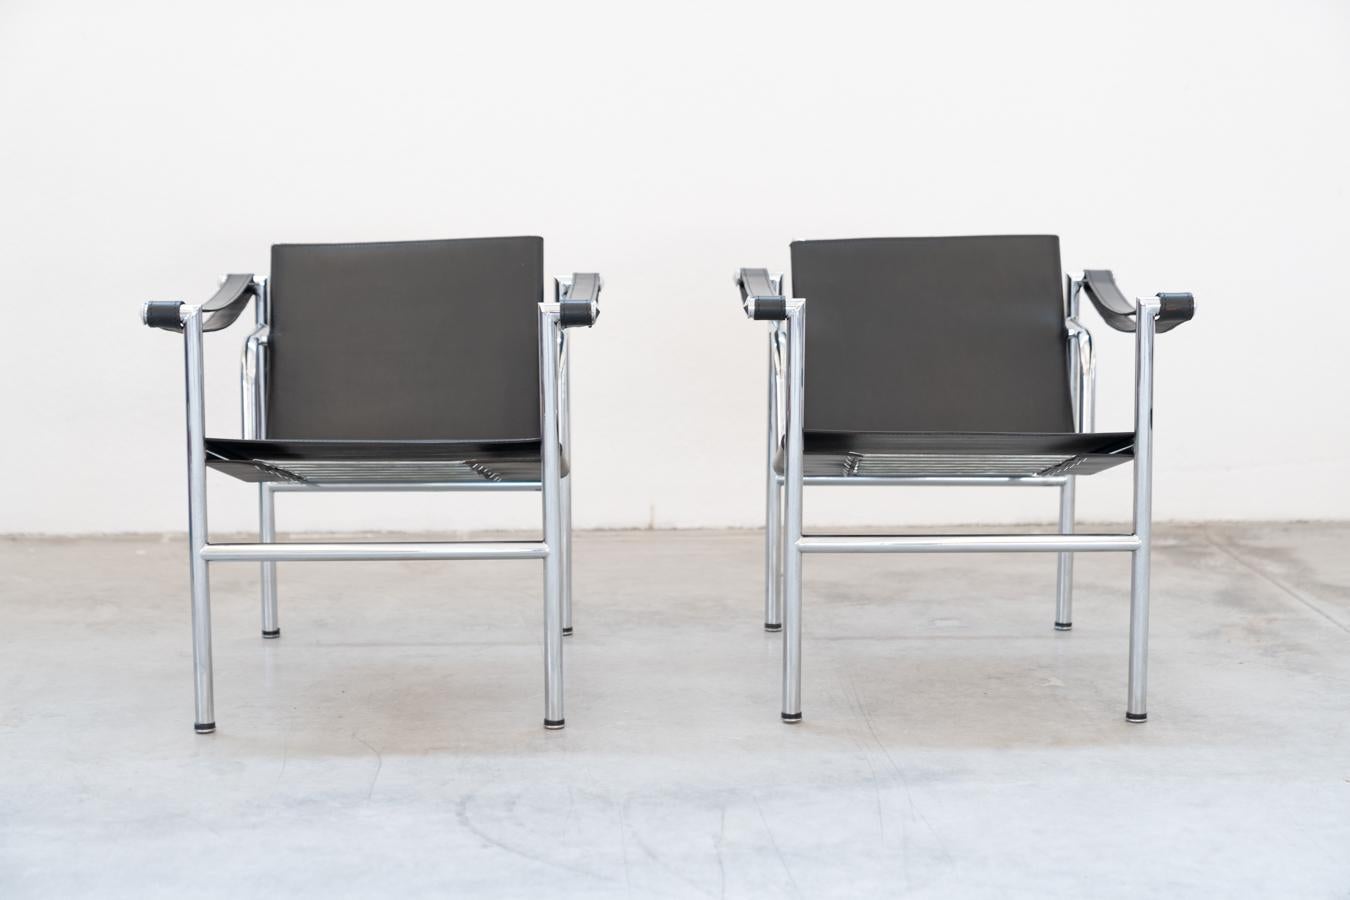 Paar LC1-Sessel von Le Corbusier, für Cassina 1970
Ein Stück Designgeschichte aus dem LC1 von Le Corbusier. Der Entwurf 			geht auf das Jahr 1928 zurück. Einfache Sessel im Avantgard-Design des 			1920er Jahre, zu einer Zeit, als der Designer Le